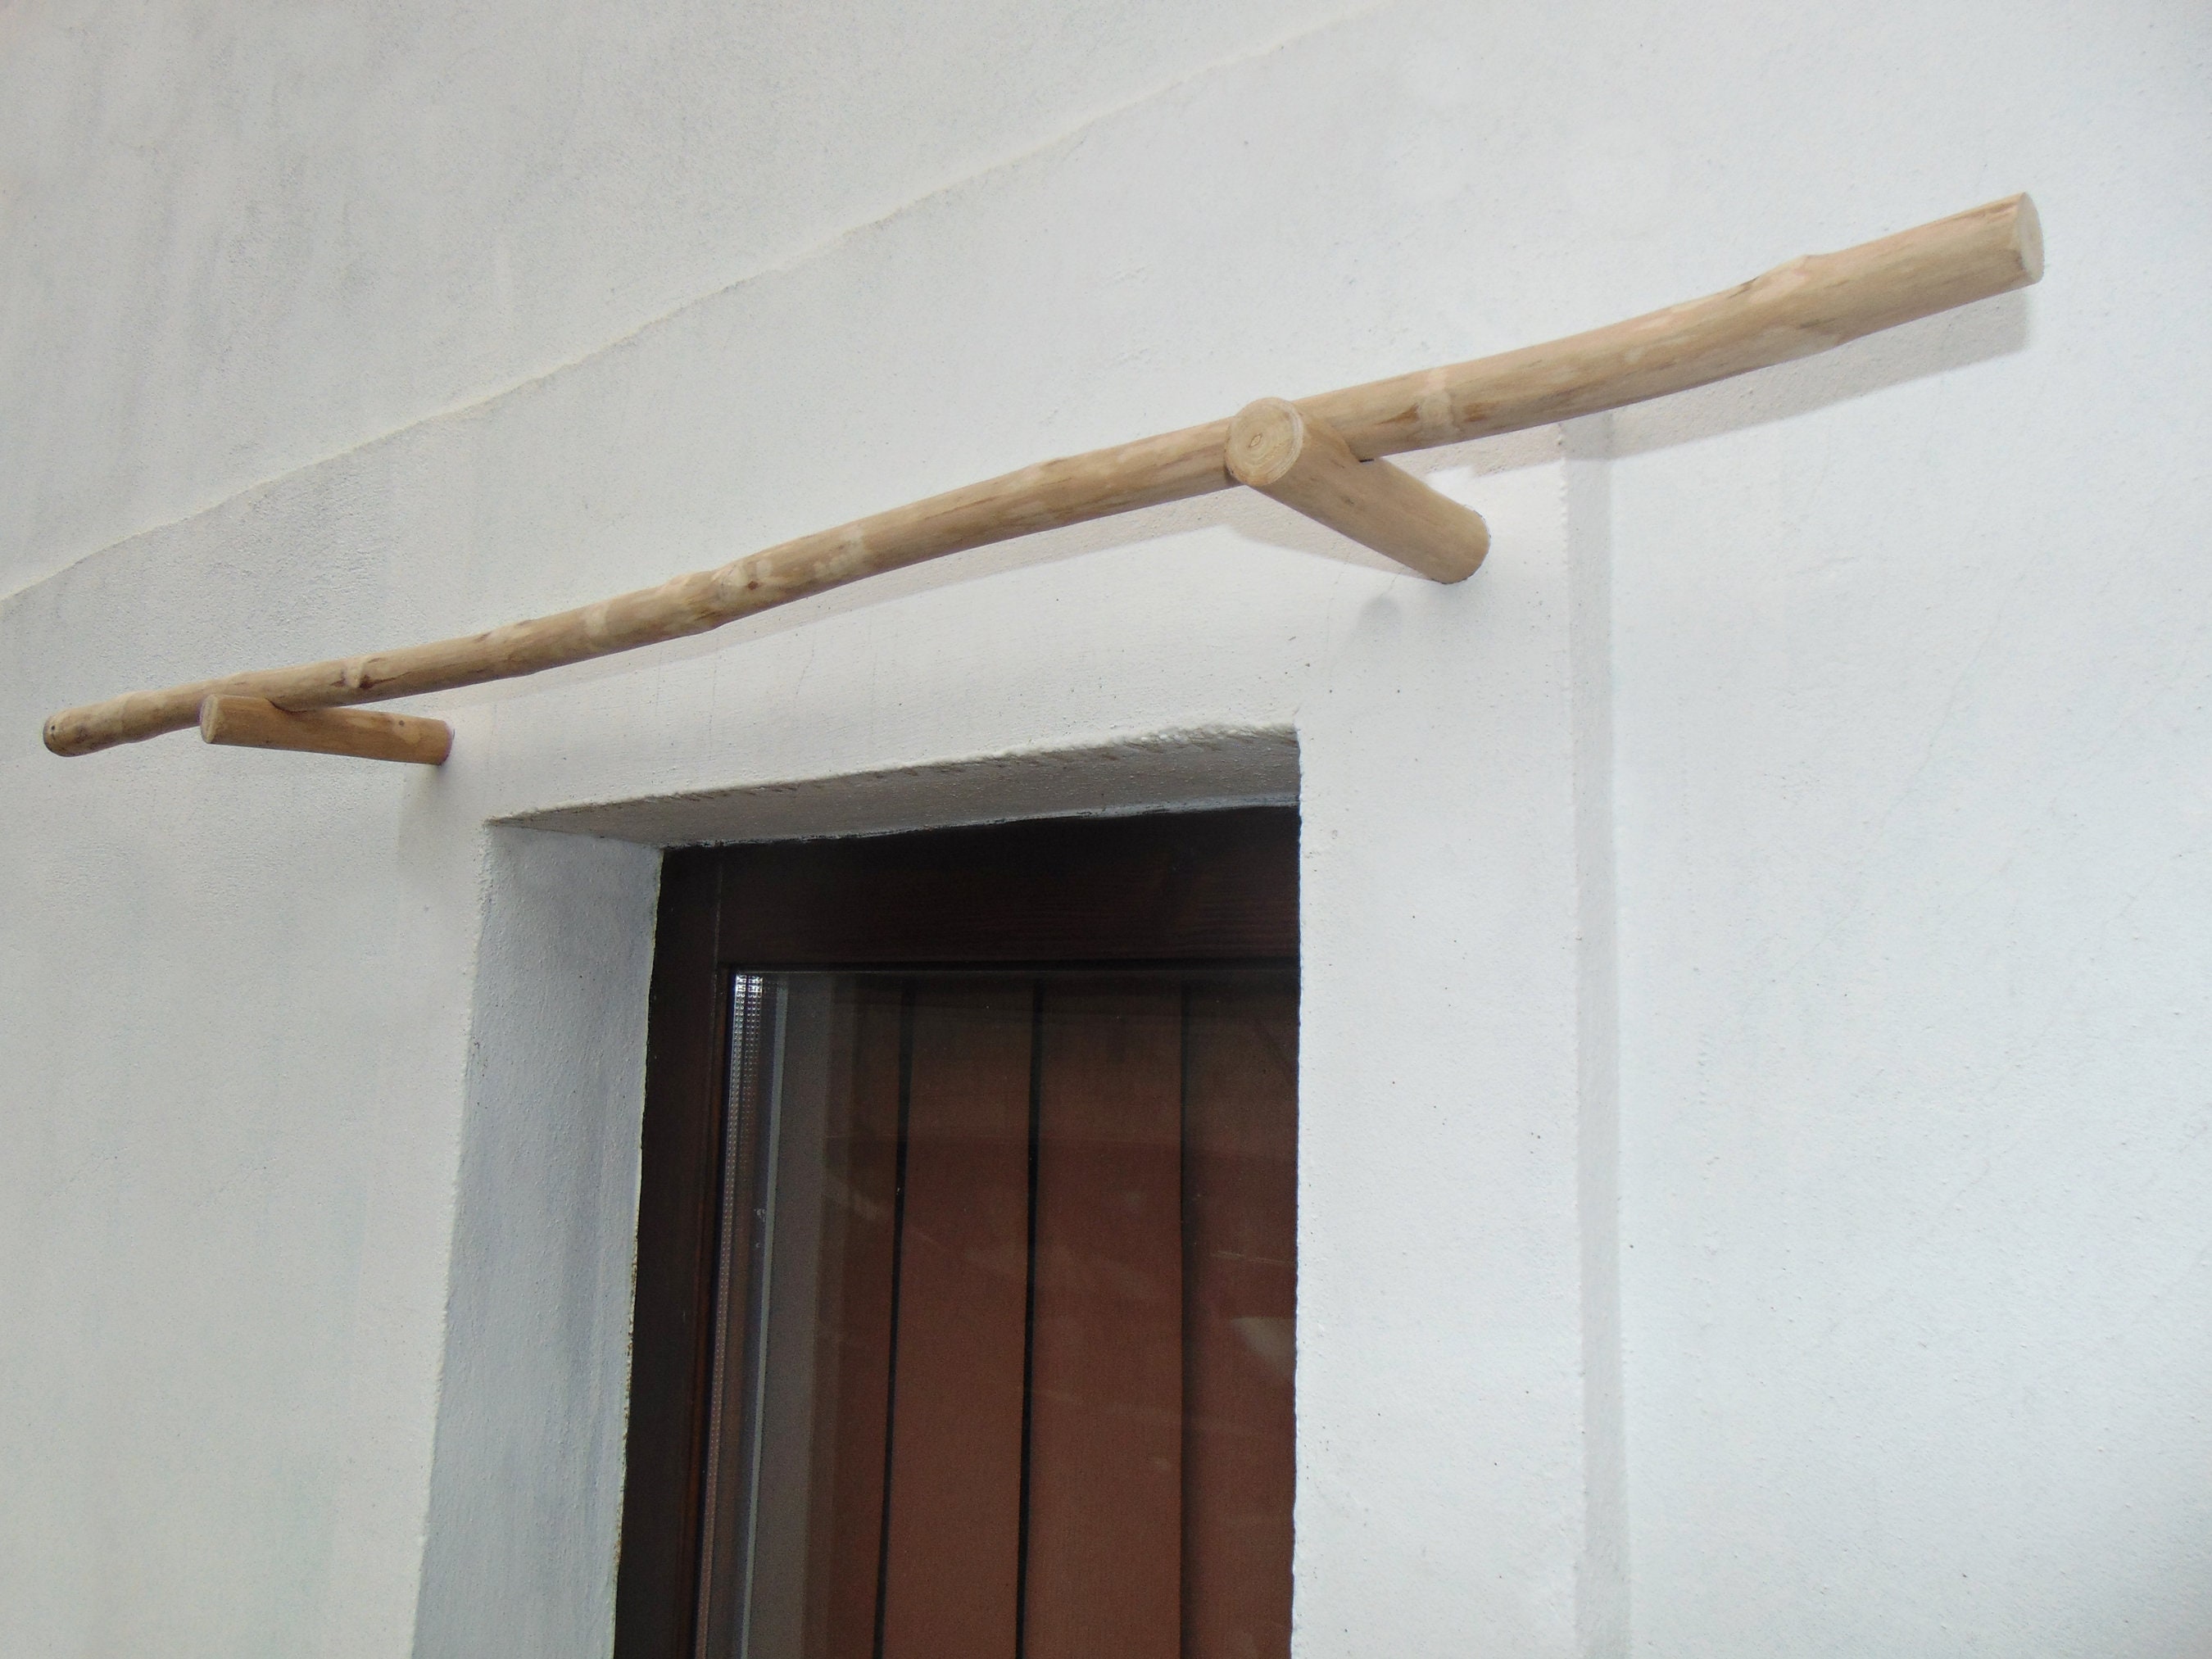 Bastoni per tende « TLG Ghezzi - Anelli in legno, bastoni in legno, profili  in legno, mantovane, tende, scorritenda, riloghe